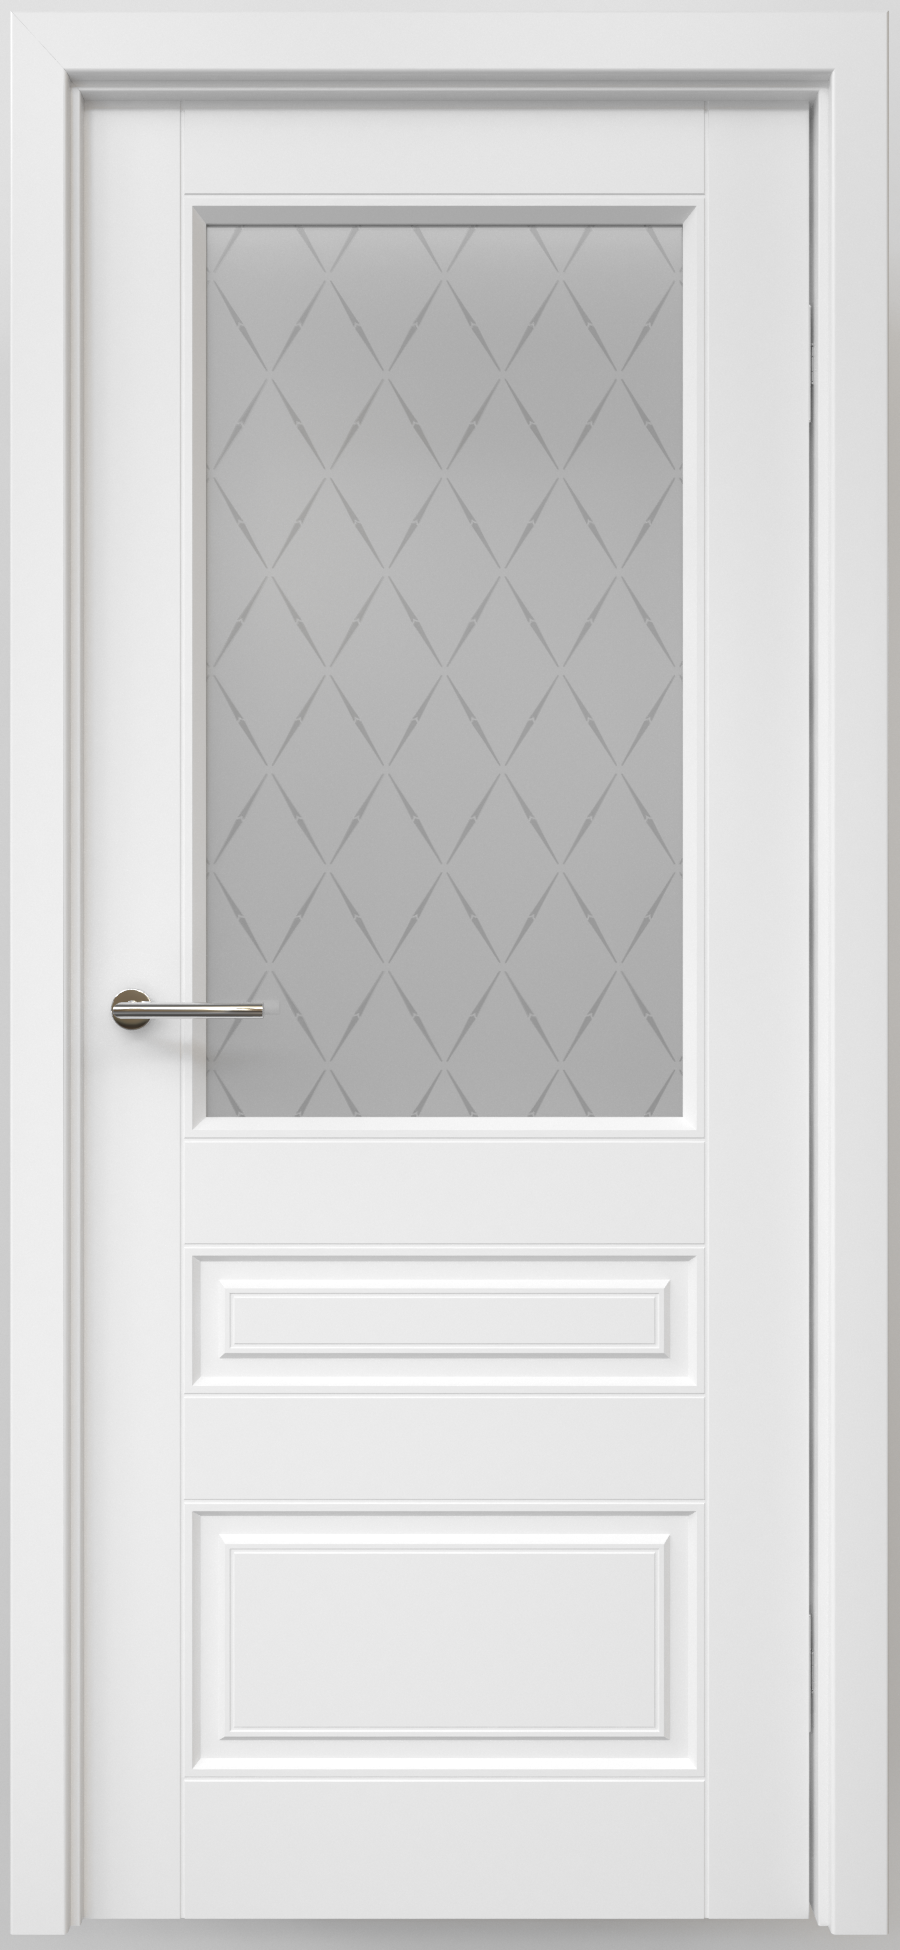 Полотно дверное остекленное Эмаль Классика-3 ЛЕВОЕ 900 белый ст. мателюкс "Лорд мат" (защелка маг)